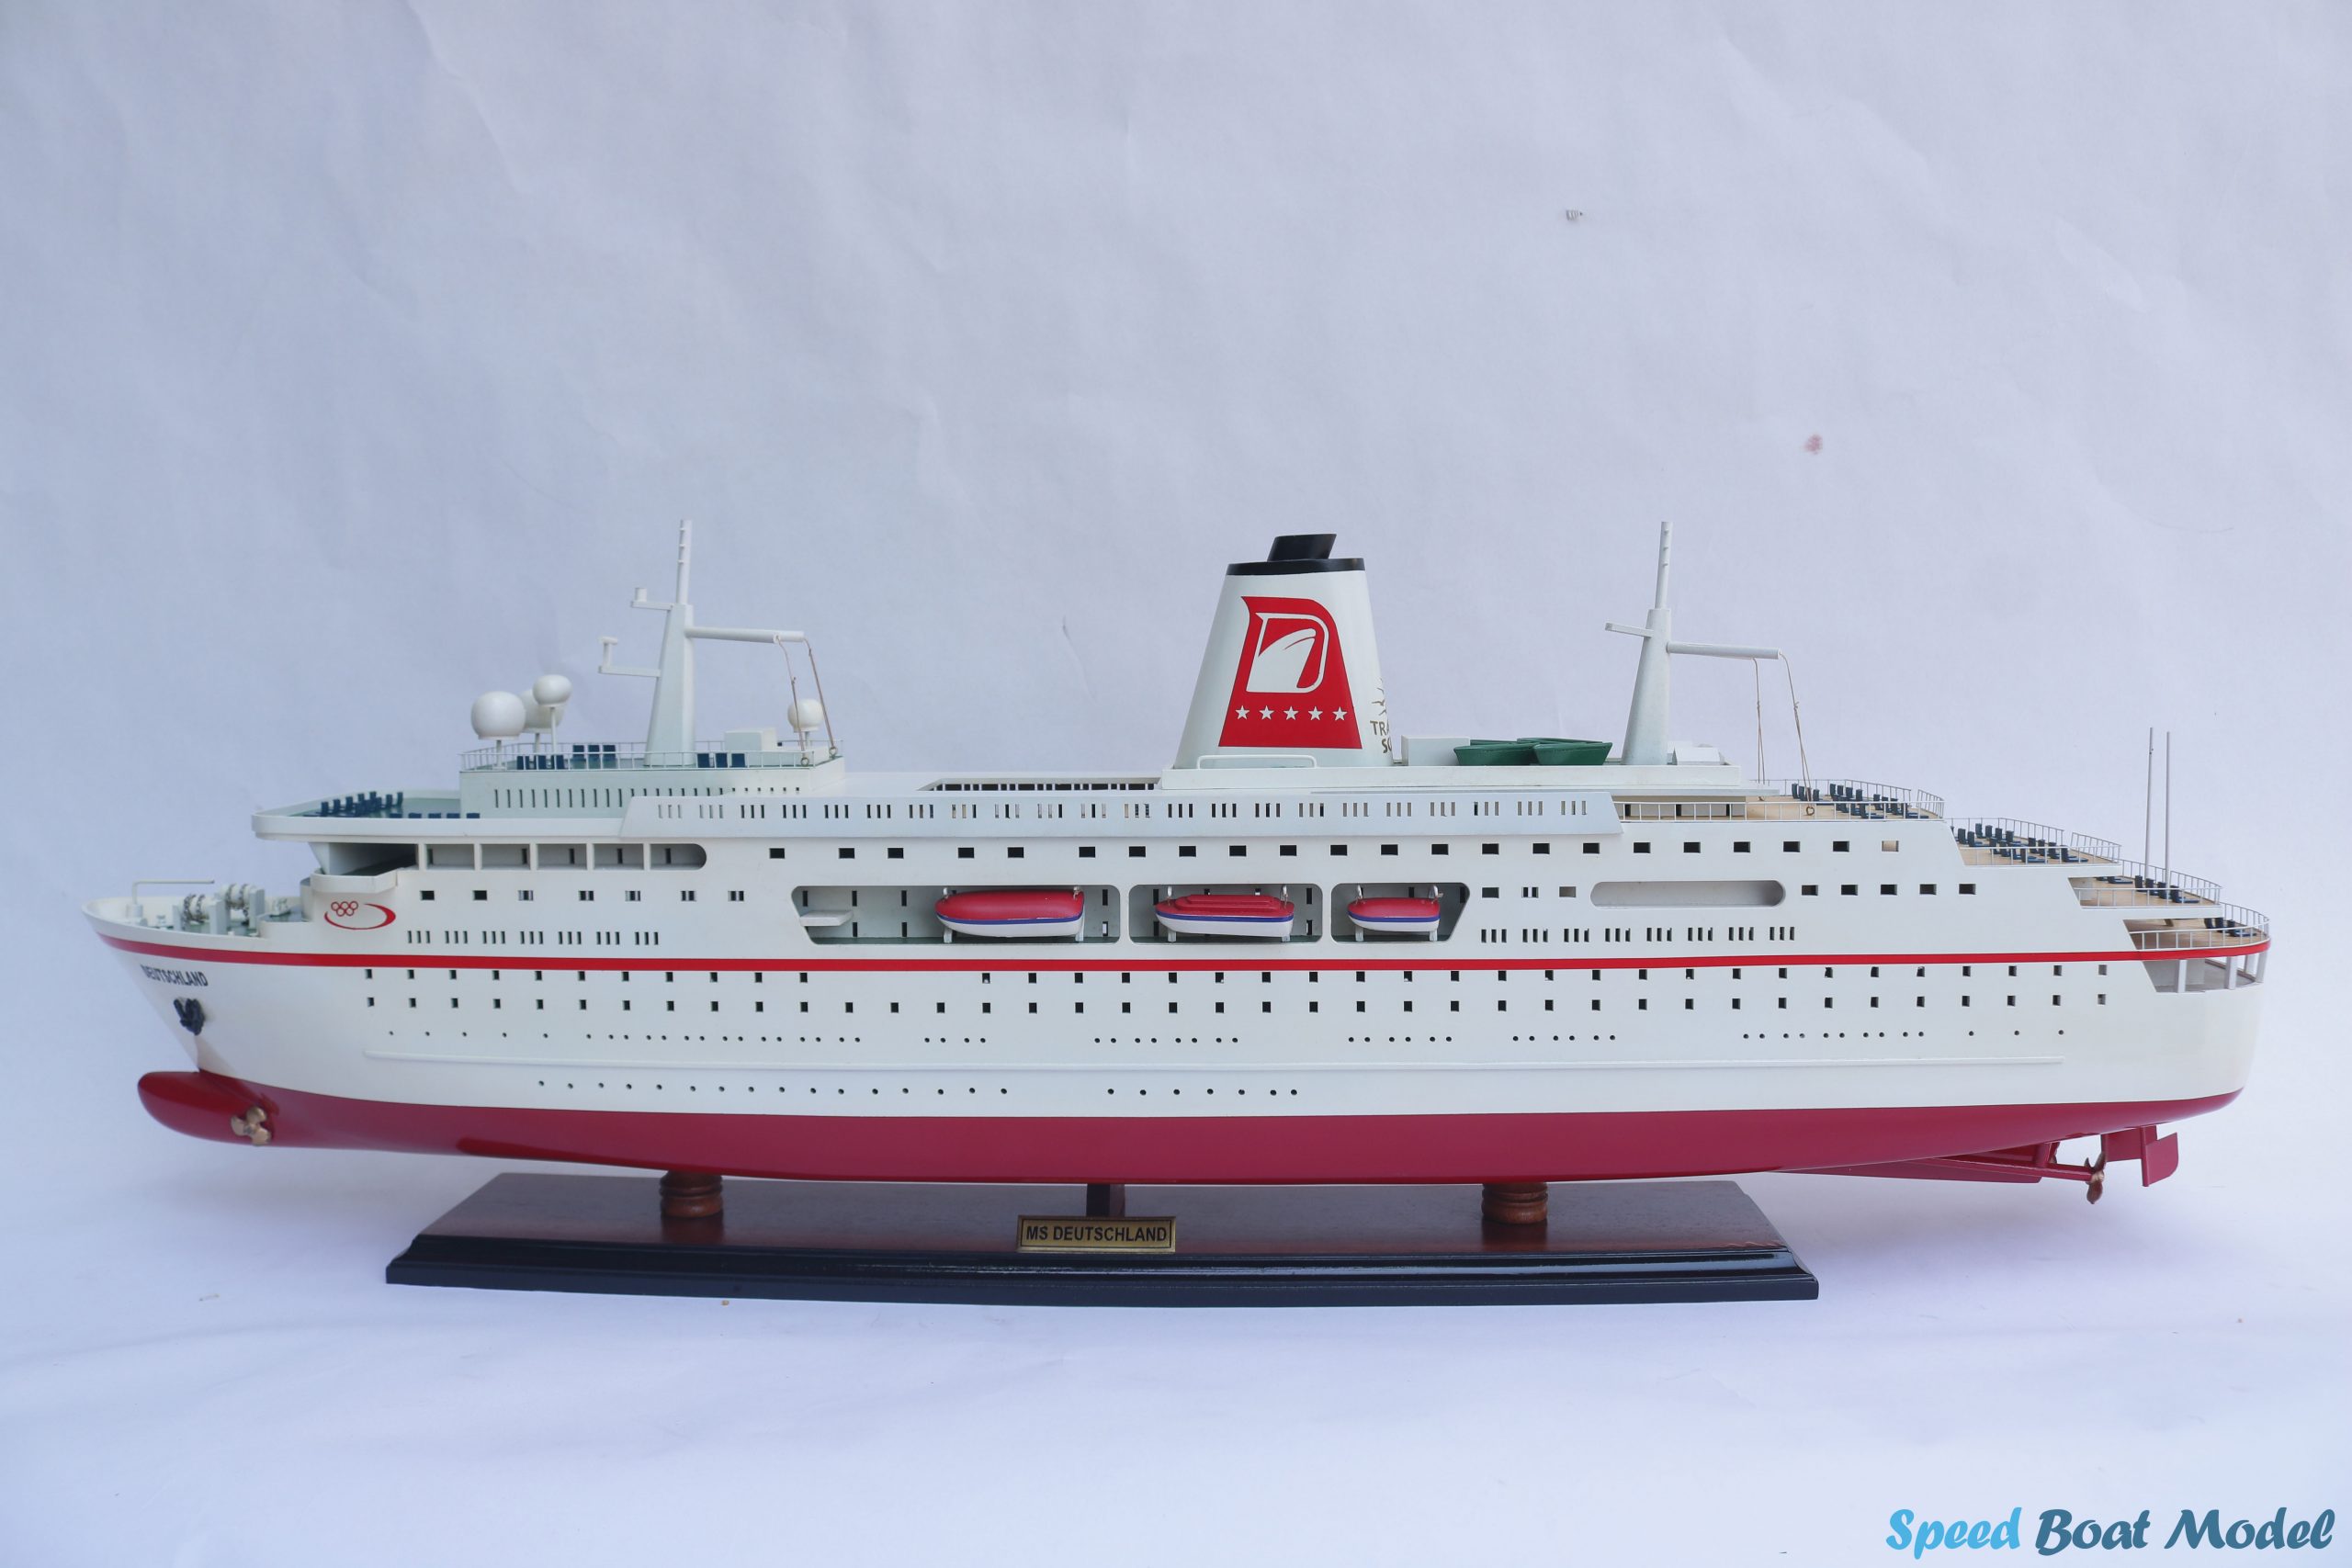 Ms Deutschland Cruise Ship Model 34.2